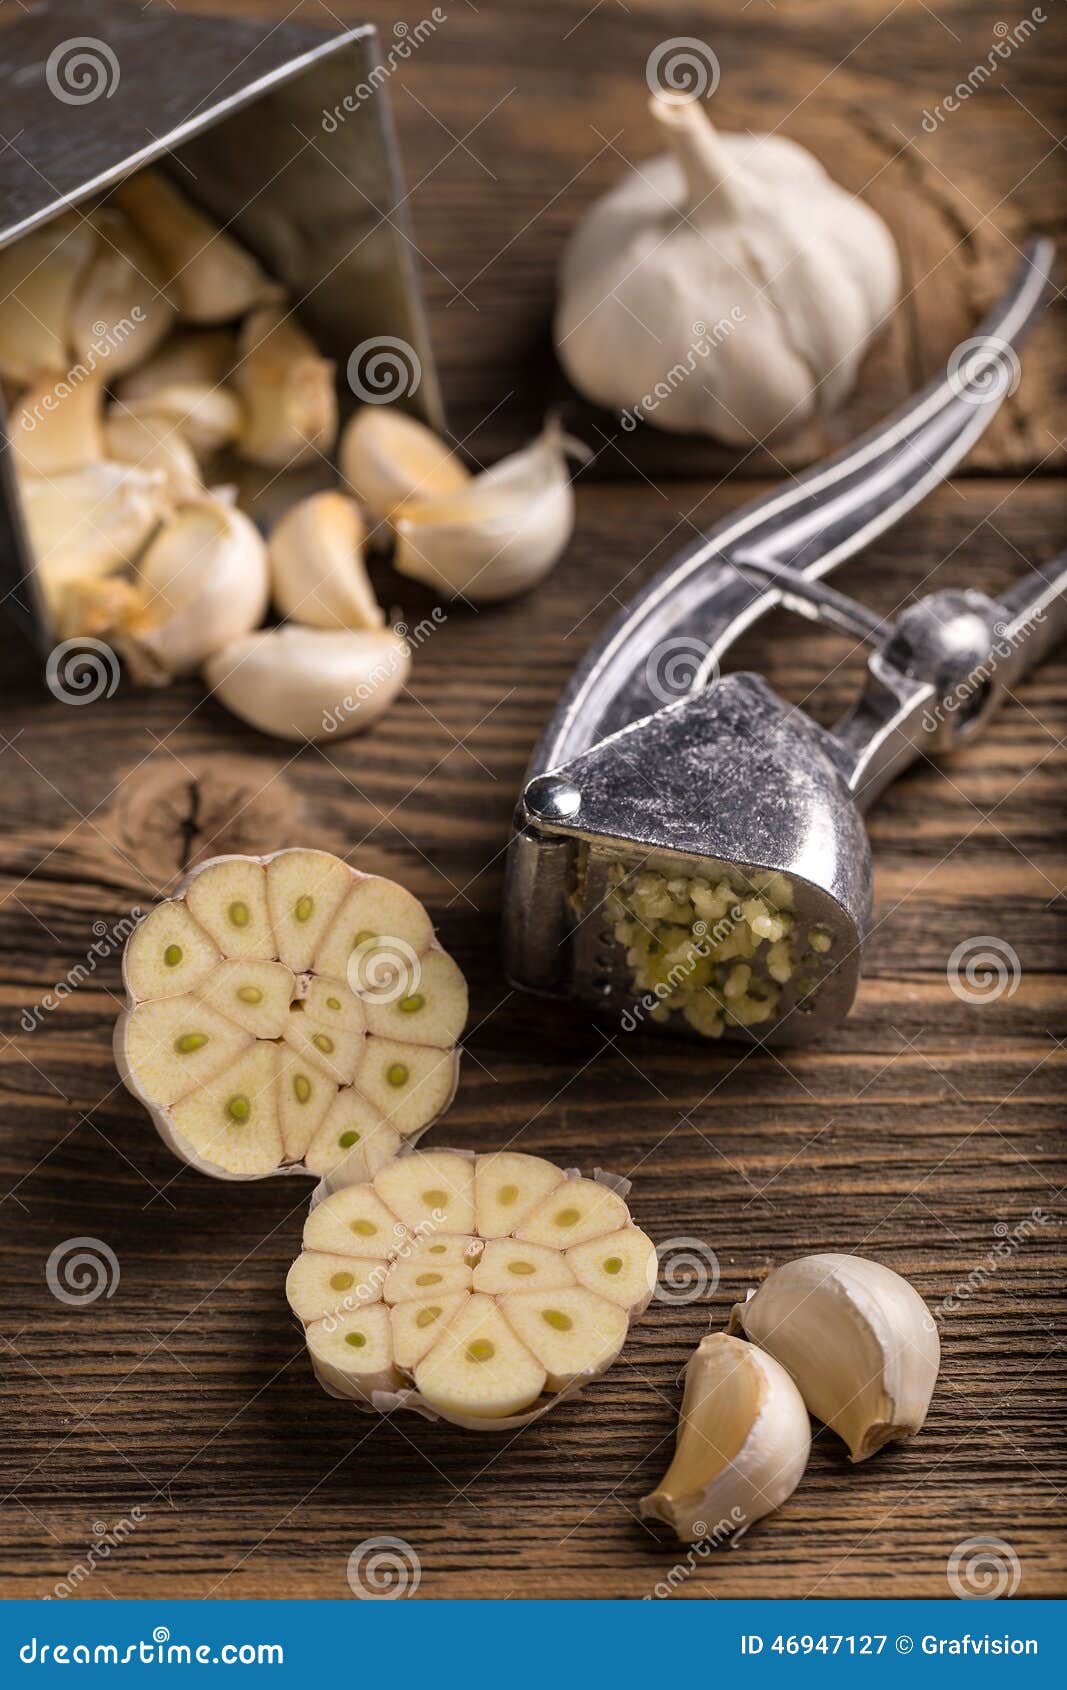 garlic crushed